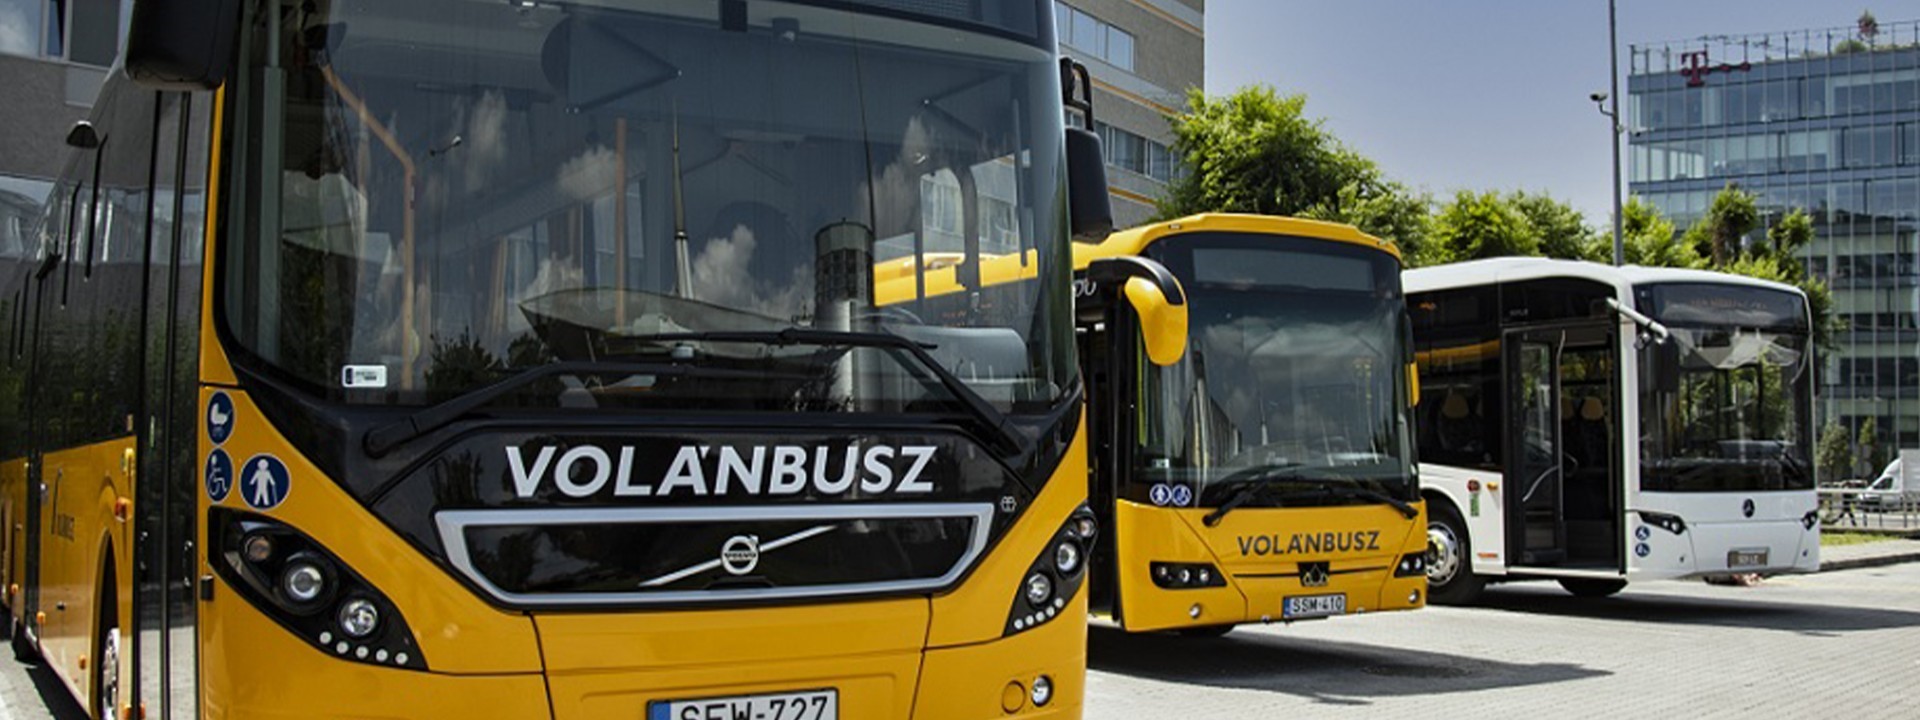 2021. augusztus 25-étől több autóbuszjárat közlekedése ideiglenesen szünetel